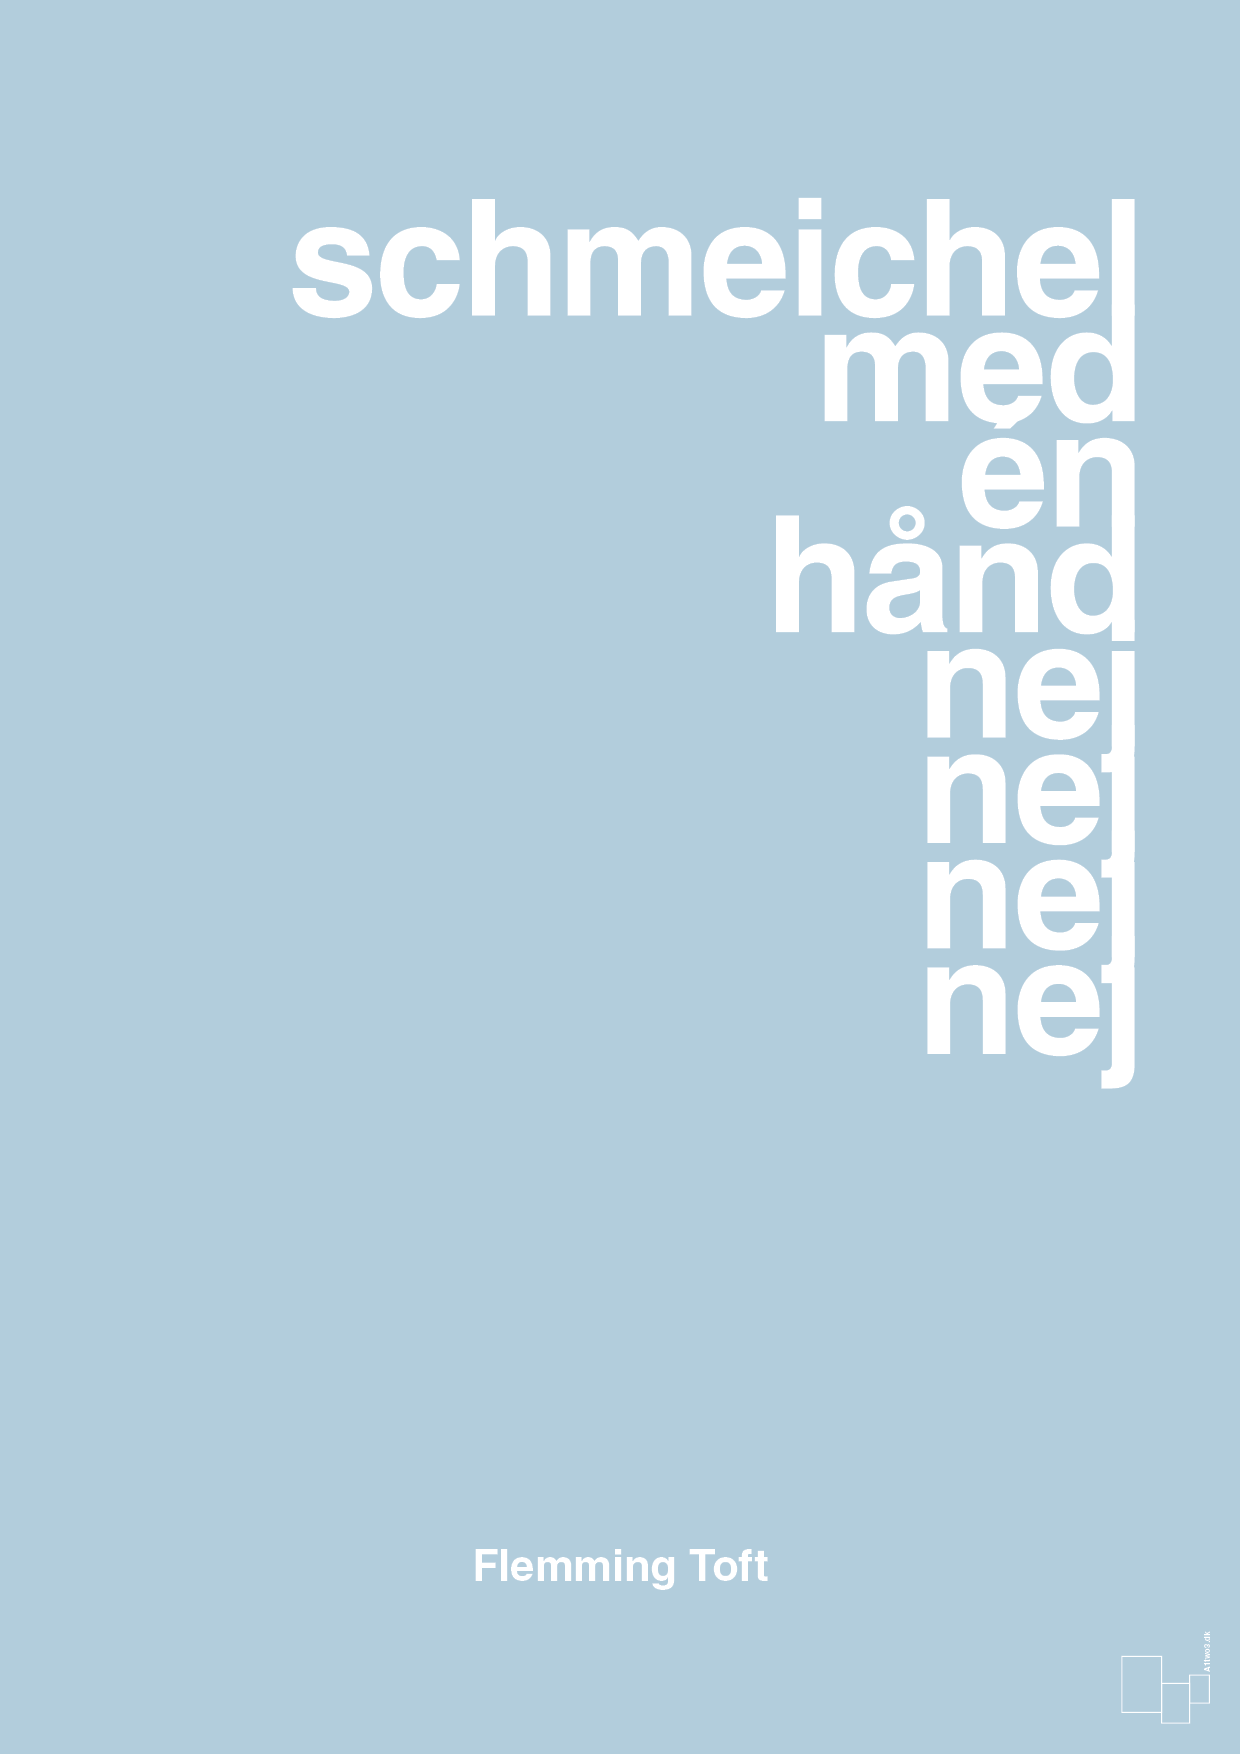 schmeichel med én hånd nej nej nej nej - Plakat med Citater i Heavenly Blue